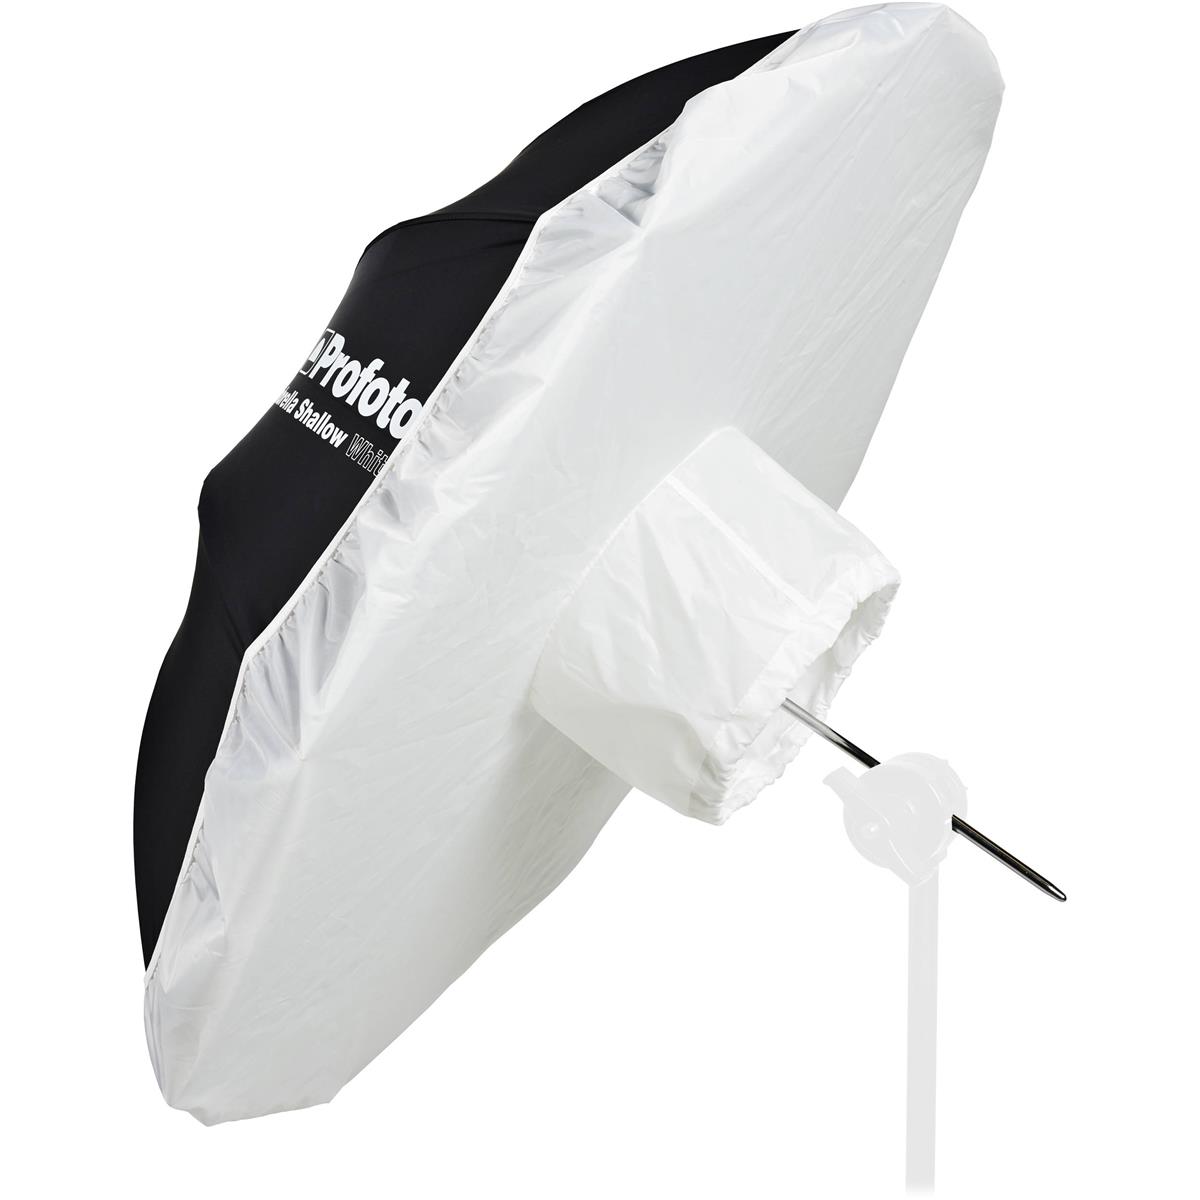 Profoto 100992 Umbrella Diffuser Lg 1.5 Stops